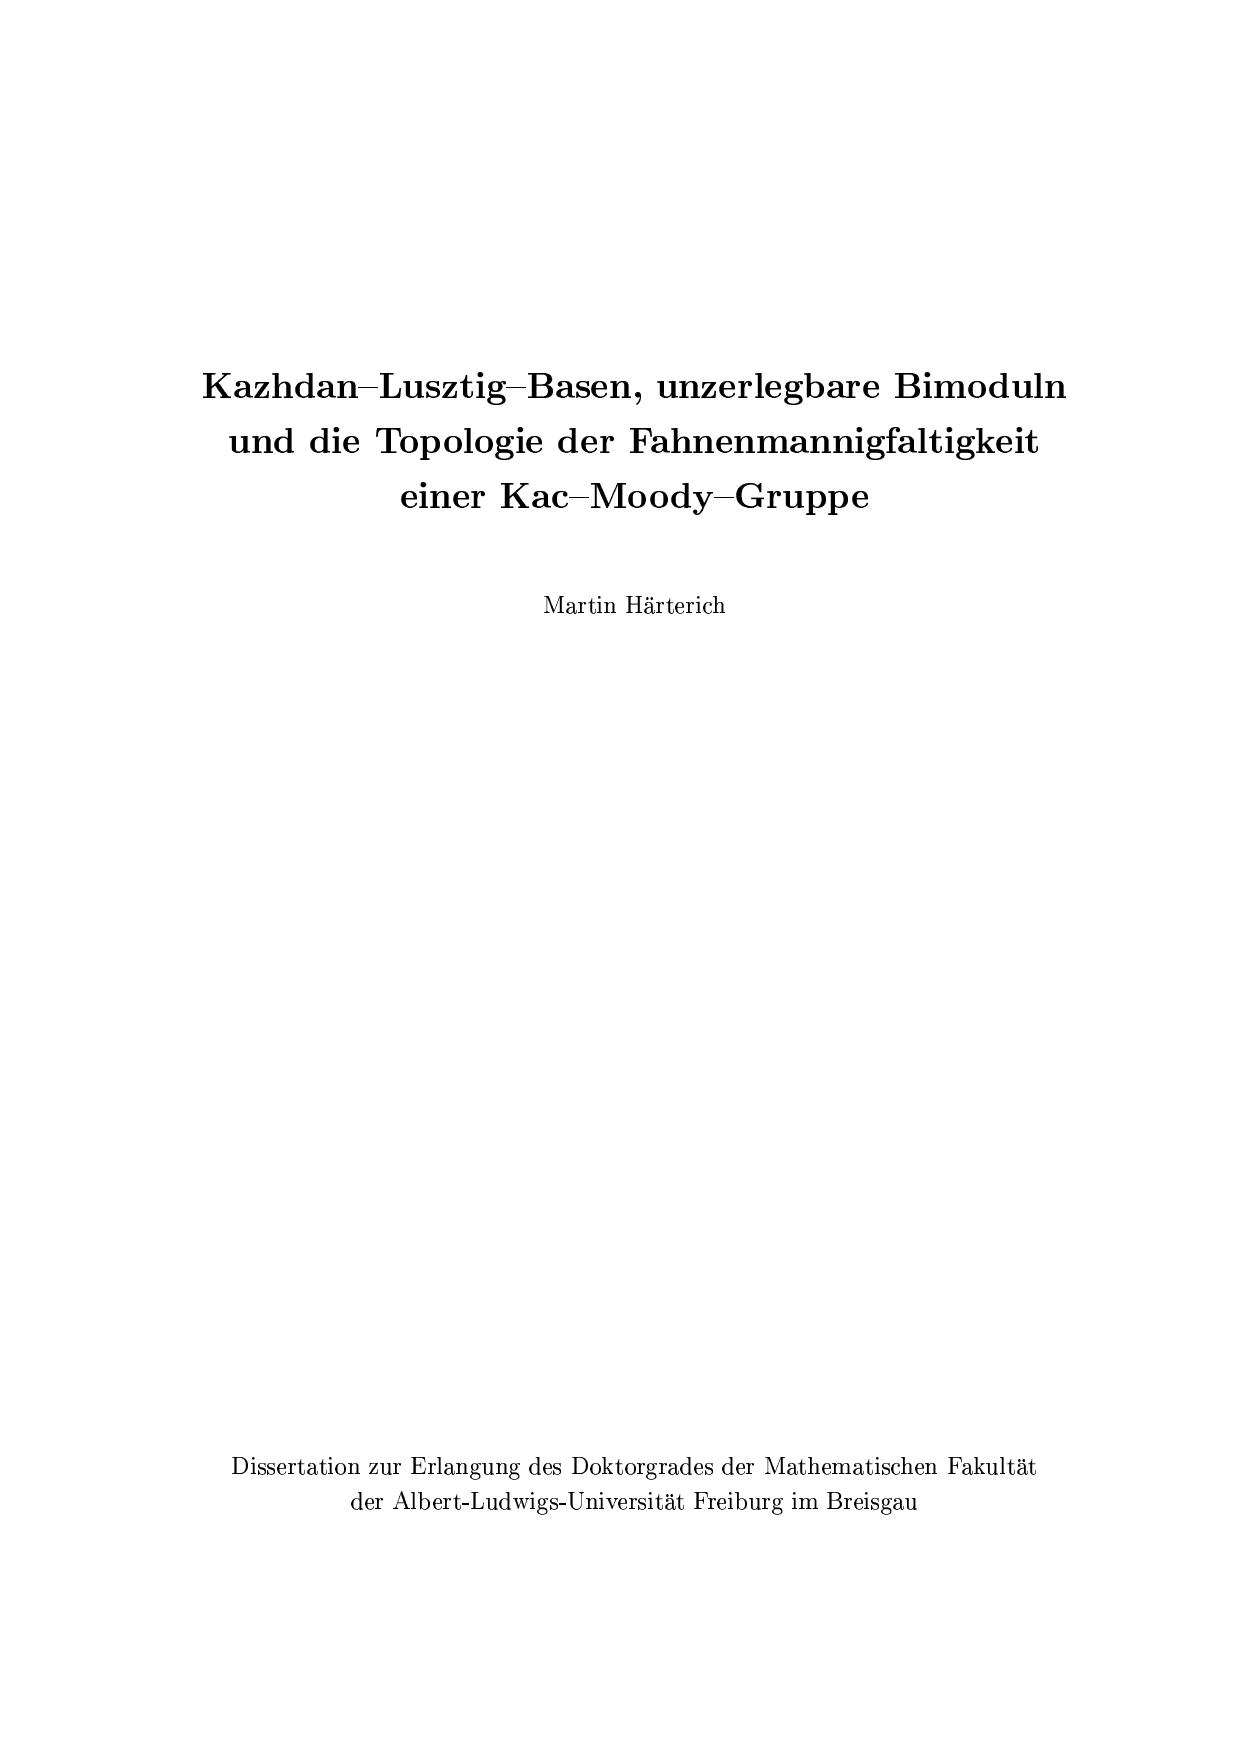 Kazhdan-Lusztig-Basen, unzerlegbare Bimoduln und die Topologie der Fahnenmannigfaltigkeit einer Kac-Moody-Gruppe - Thesis